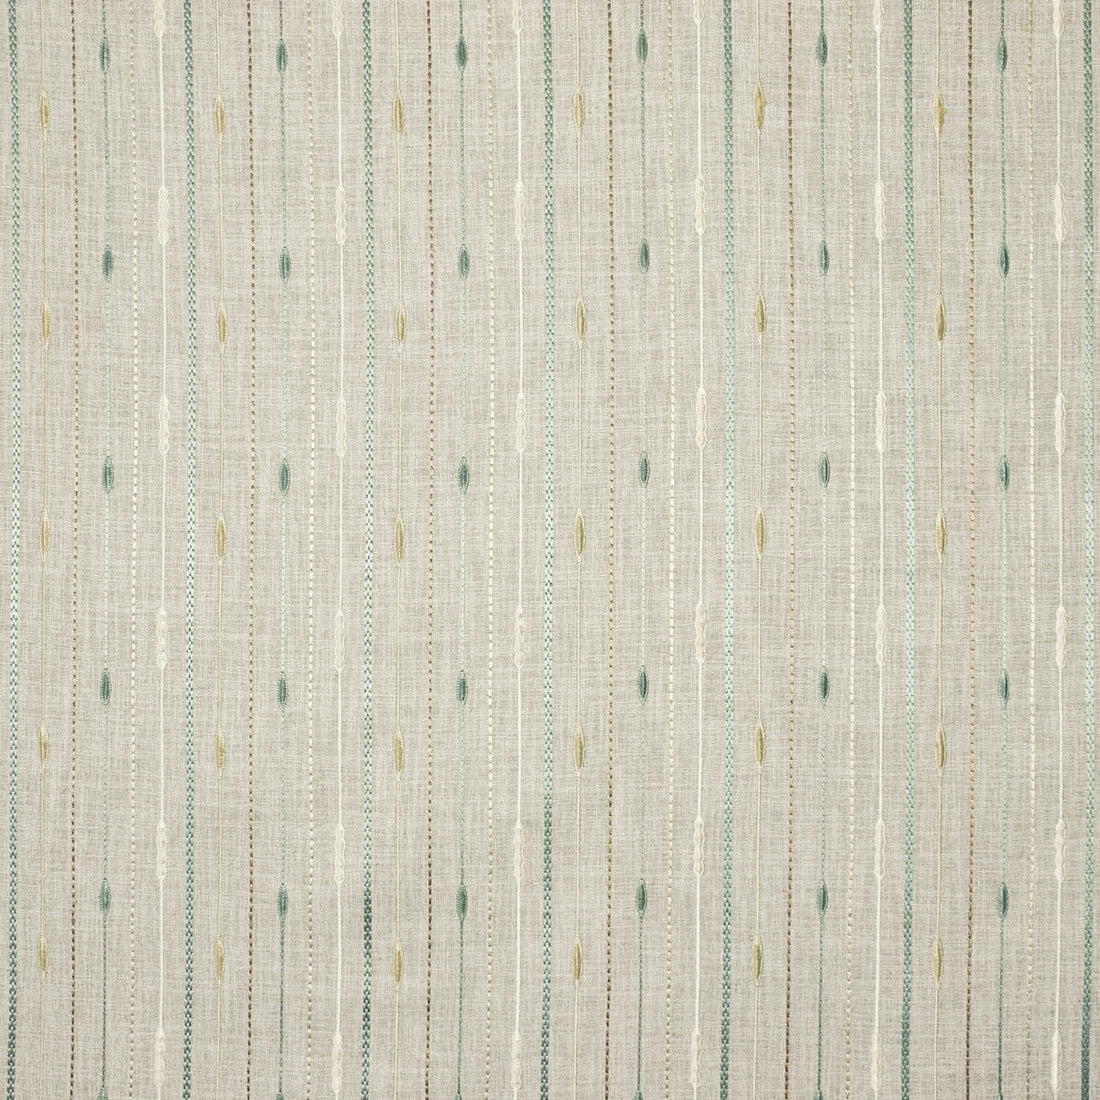 Kravet Basics fabric in 35811-1613 color - pattern 35811.1613.0 - by Kravet Basics